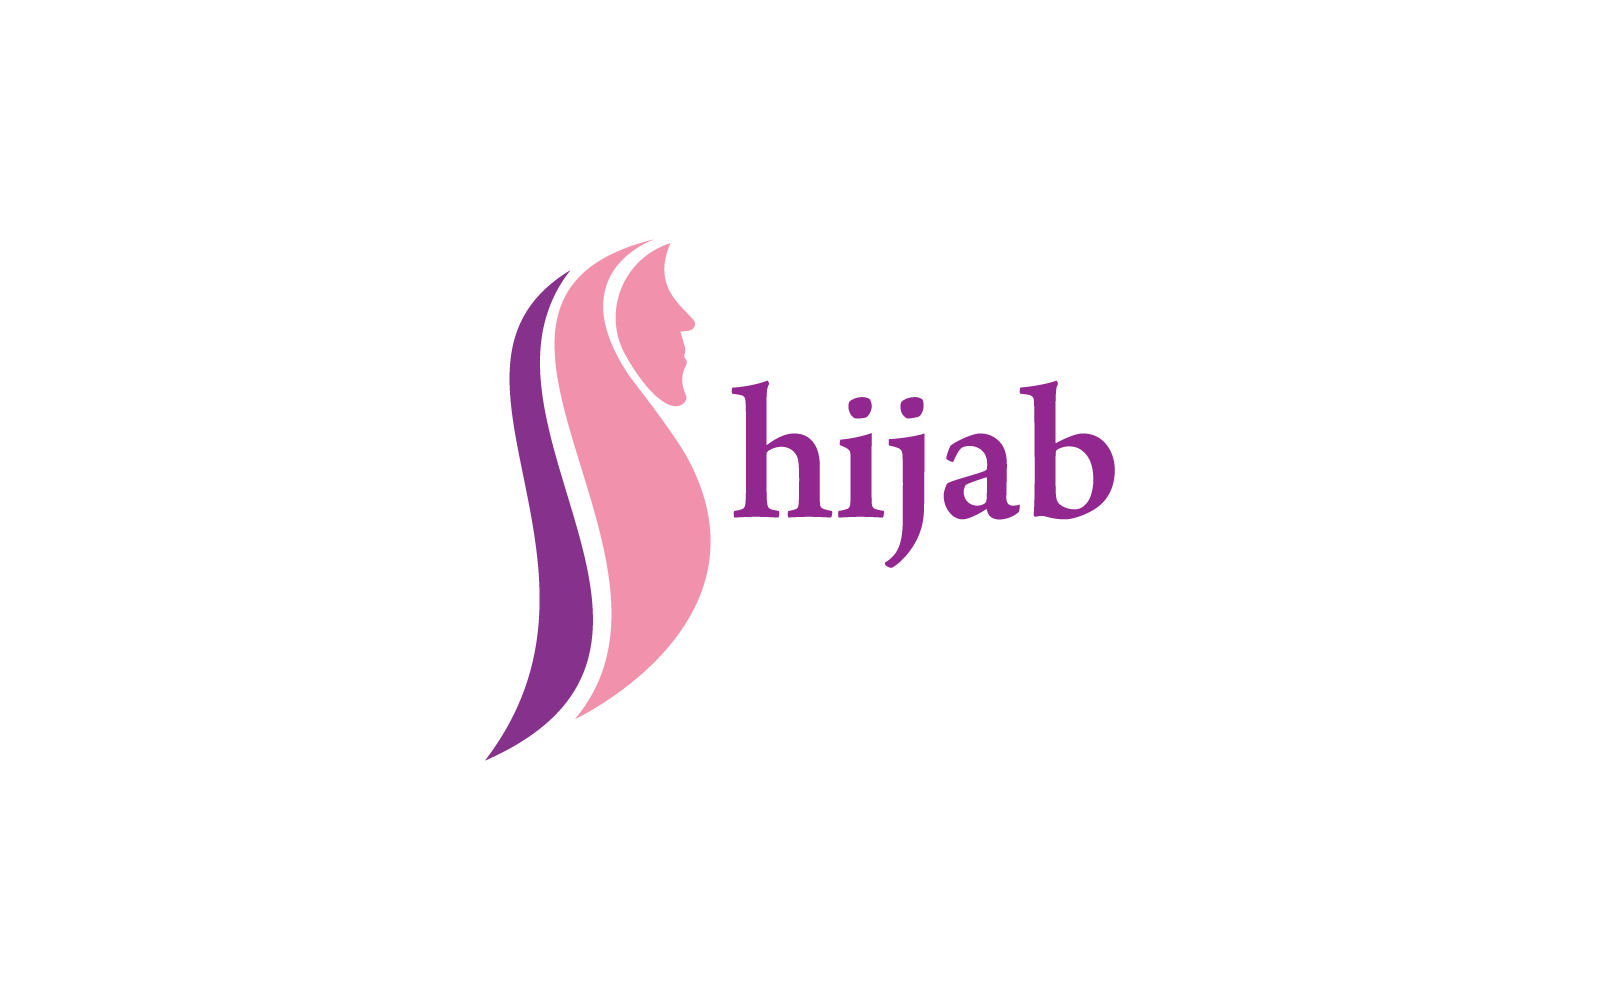 Hijab winkel logo vector illustratie sjabloon